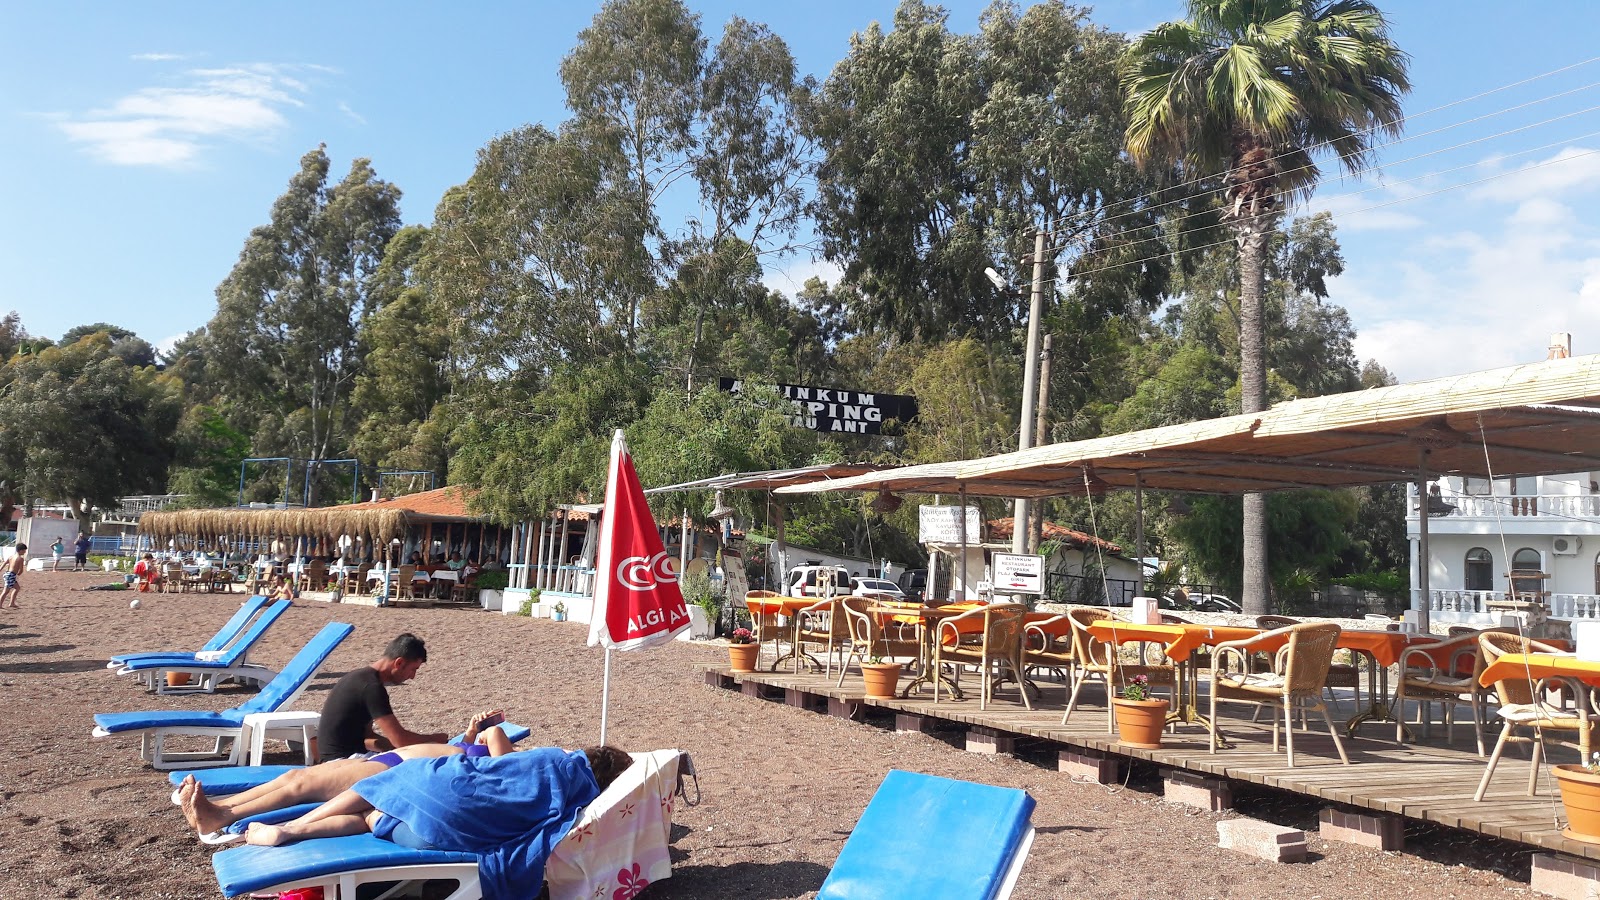 Erine beach Club'in fotoğrafı - rahatlamayı sevenler arasında popüler bir yer